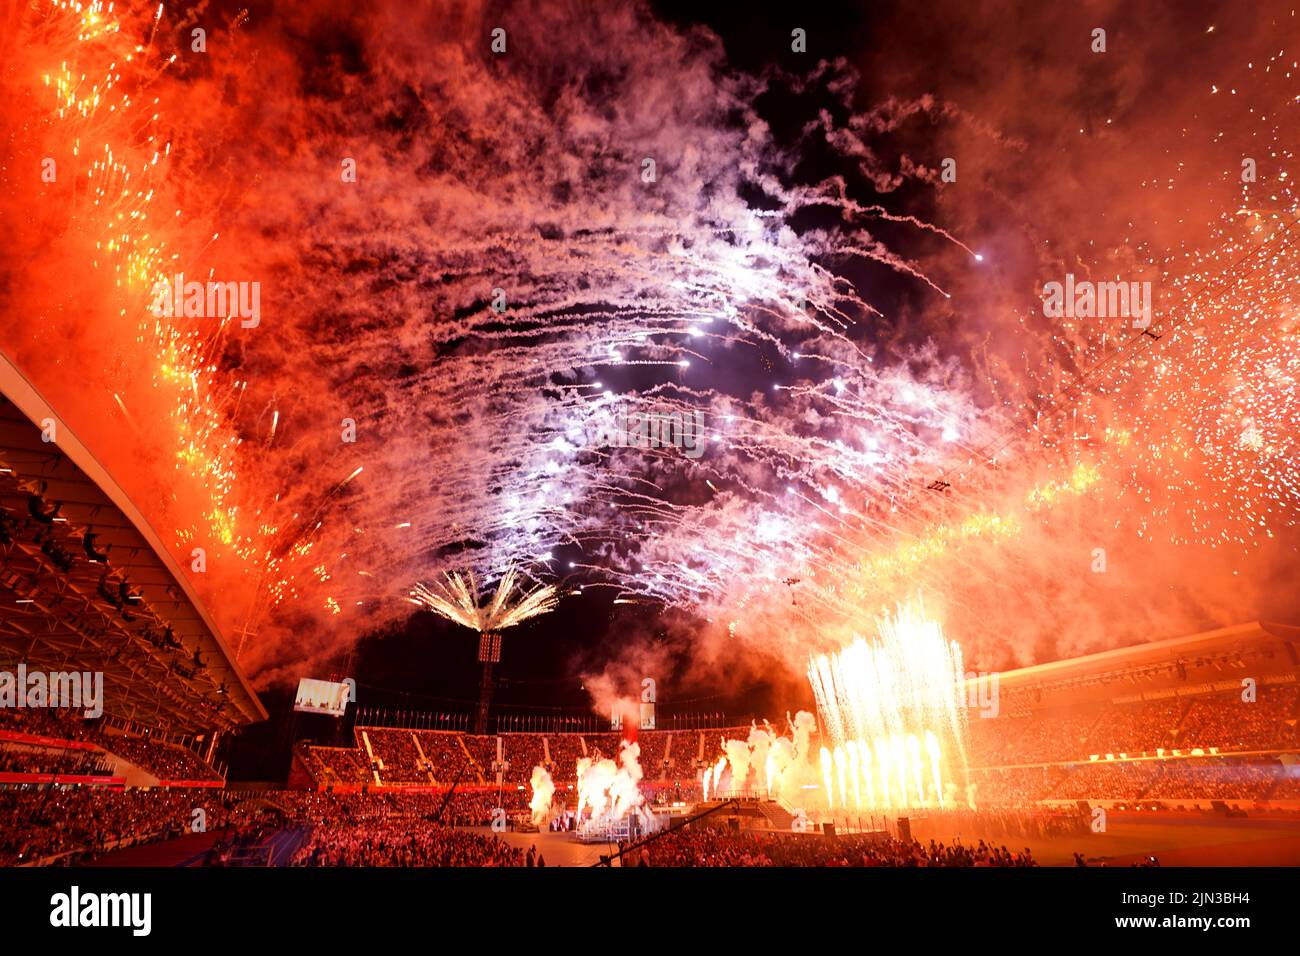 Los fuegos artificiales despegar mientras Ozzy Osbourne actúa en el escenario durante la Ceremonia de Clausura de los Juegos de la Commonwealth de 2022 en el Alexander Stadium de Birmingham. Fecha de la foto: Lunes 8 de agosto de 2022. Foto de stock